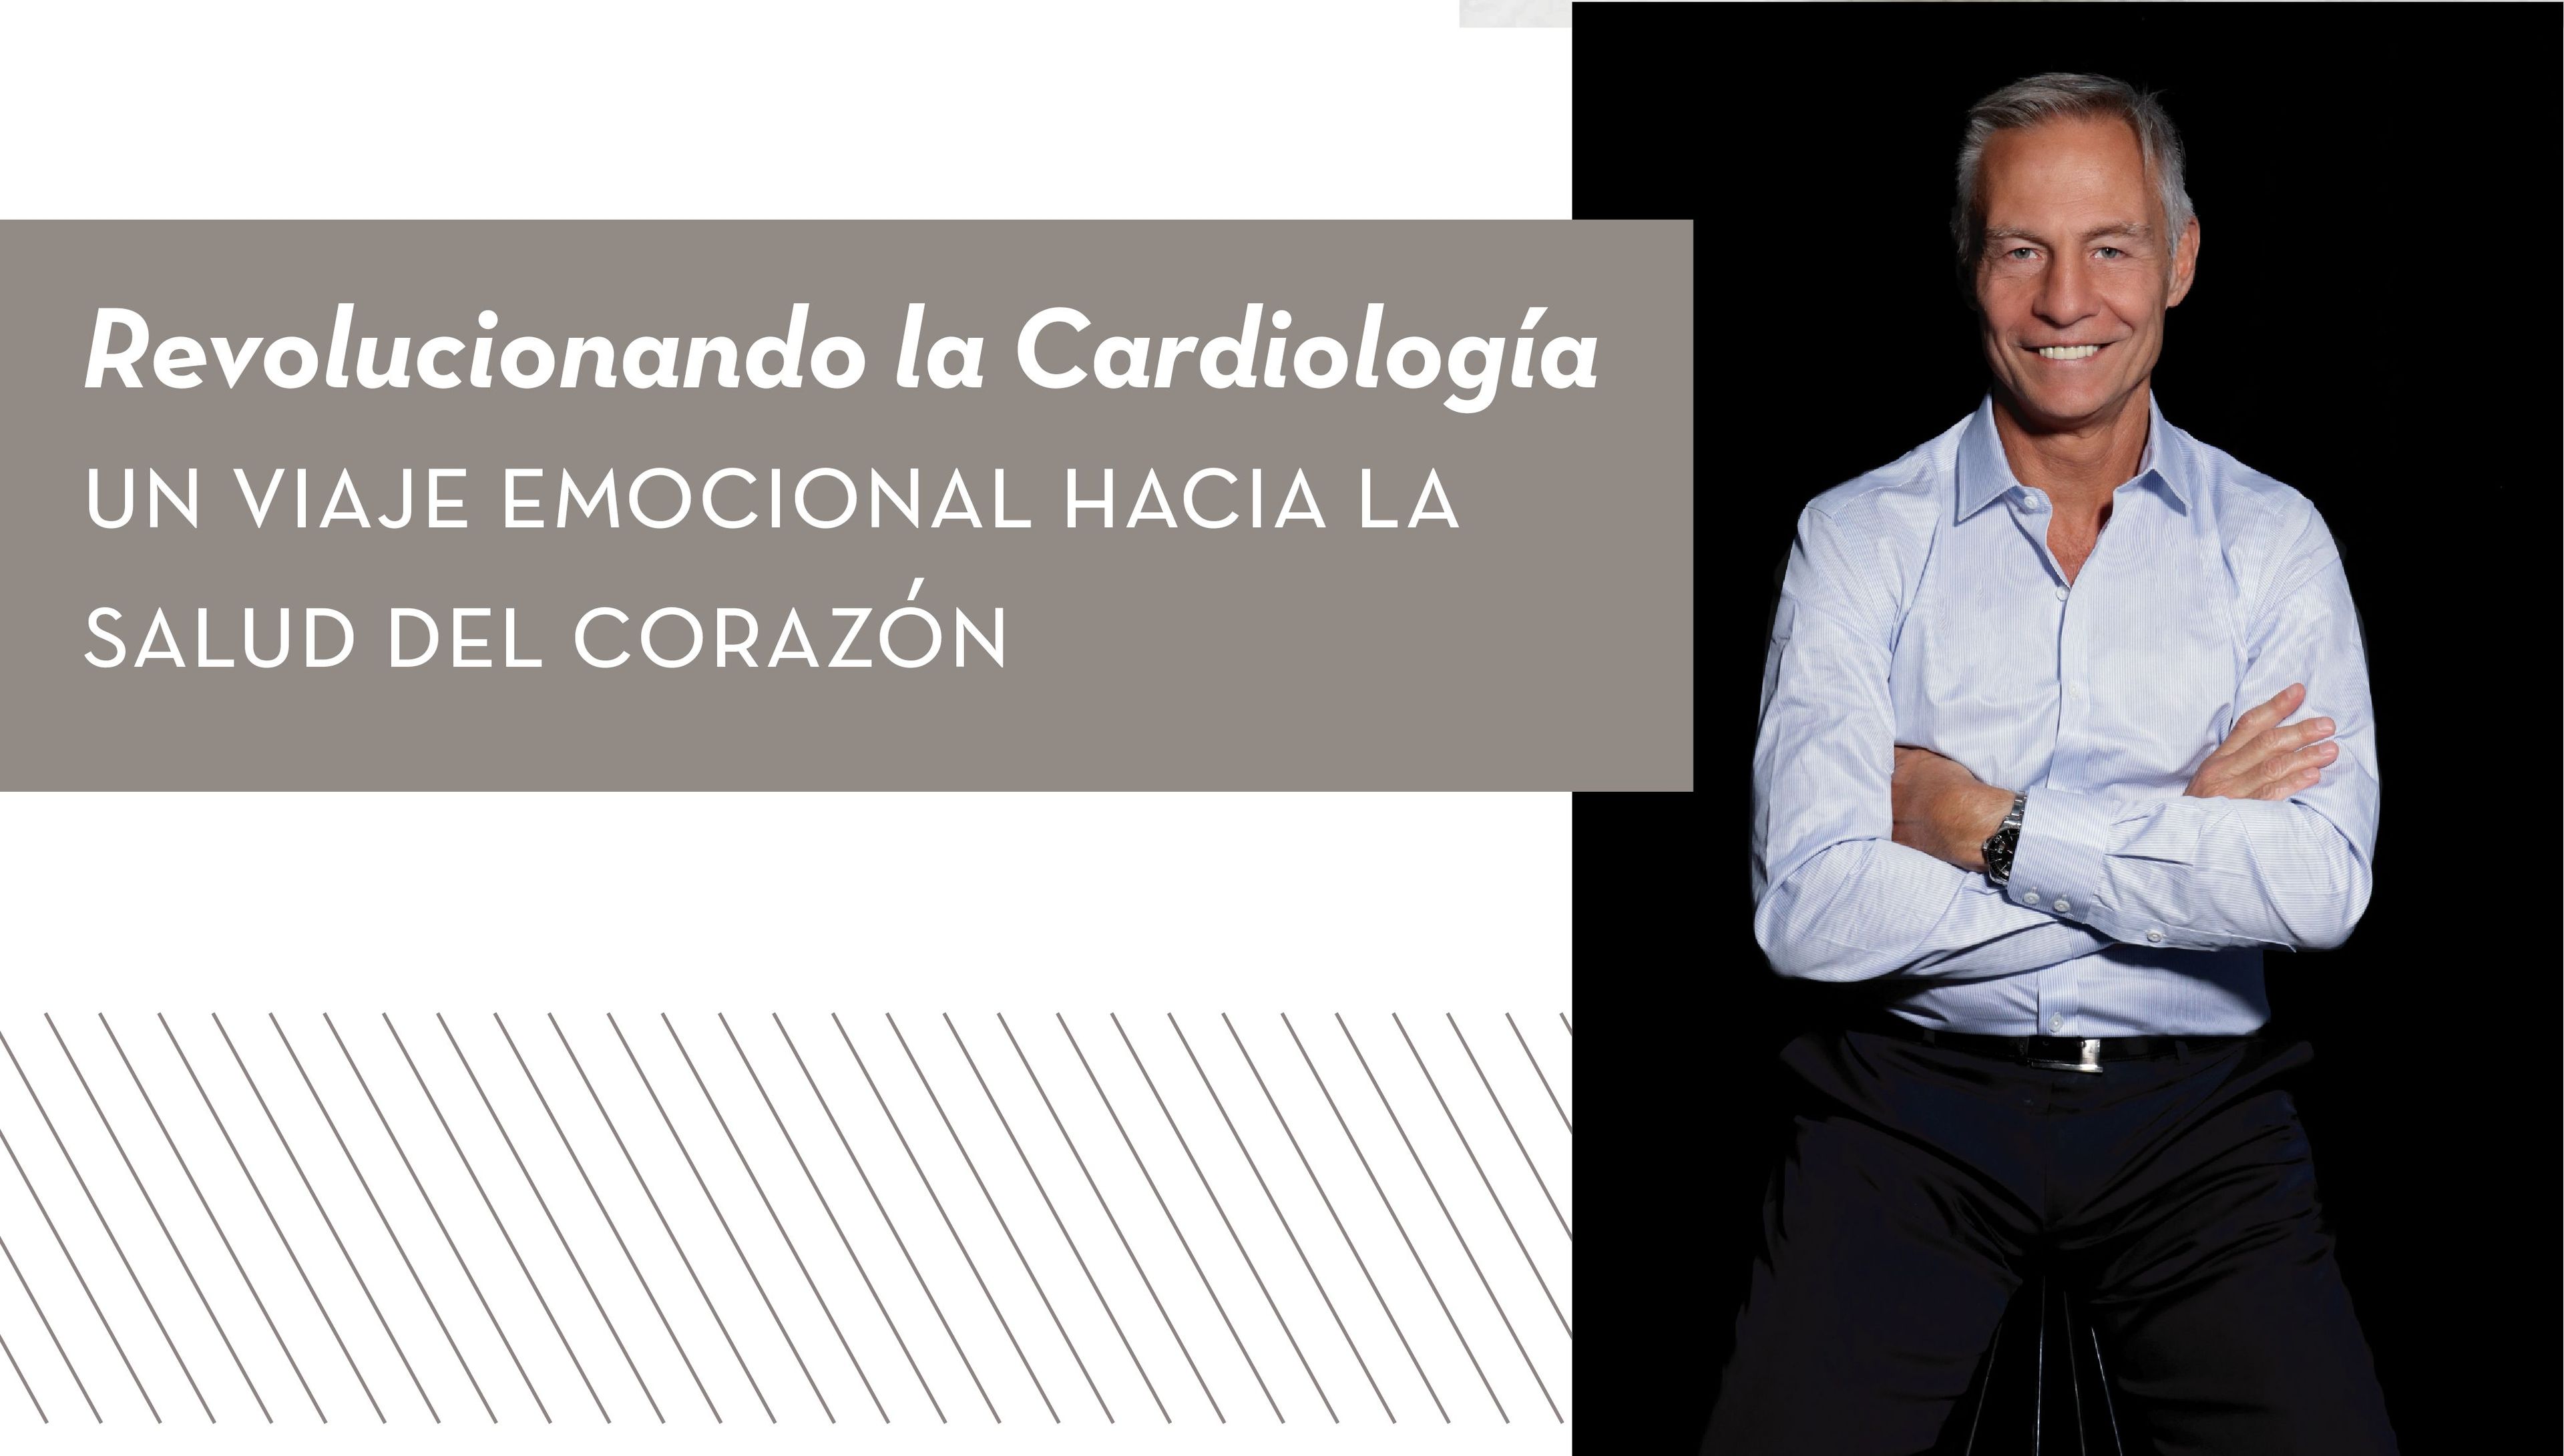 Revolucionando la Cardiología: Un Viaje Emocional hacia la Salud del Corazón